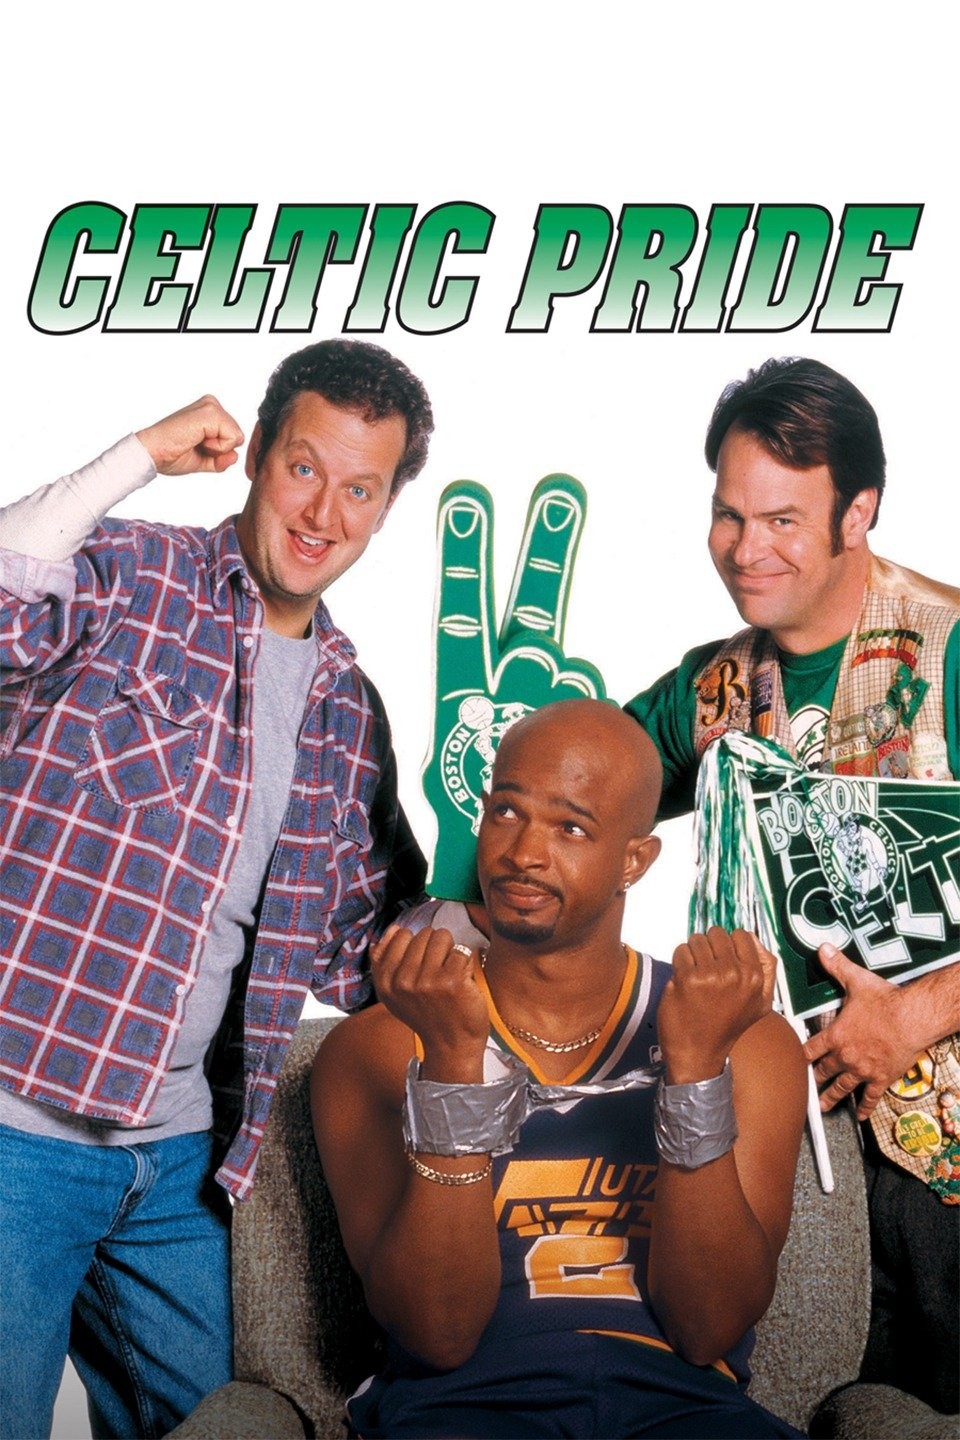 Boston Celtics NBA Champions, Celtics Pride Gift For Fan